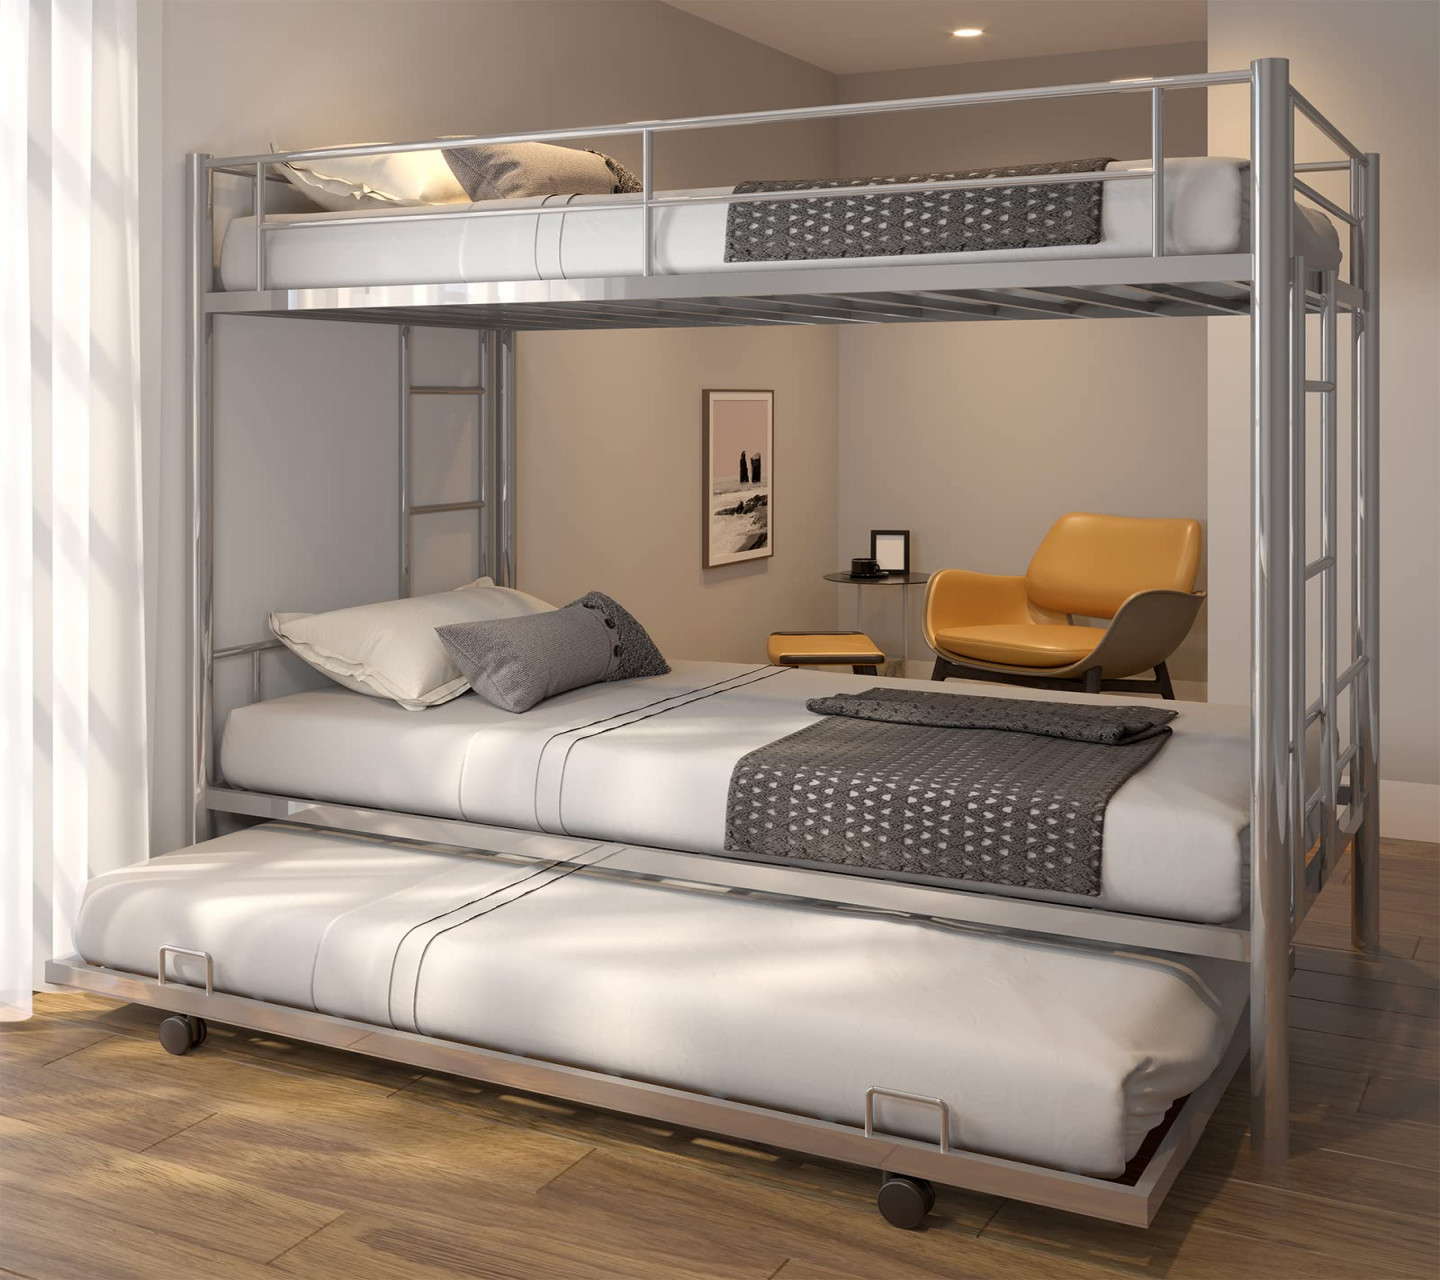 Modern Bunk Beds